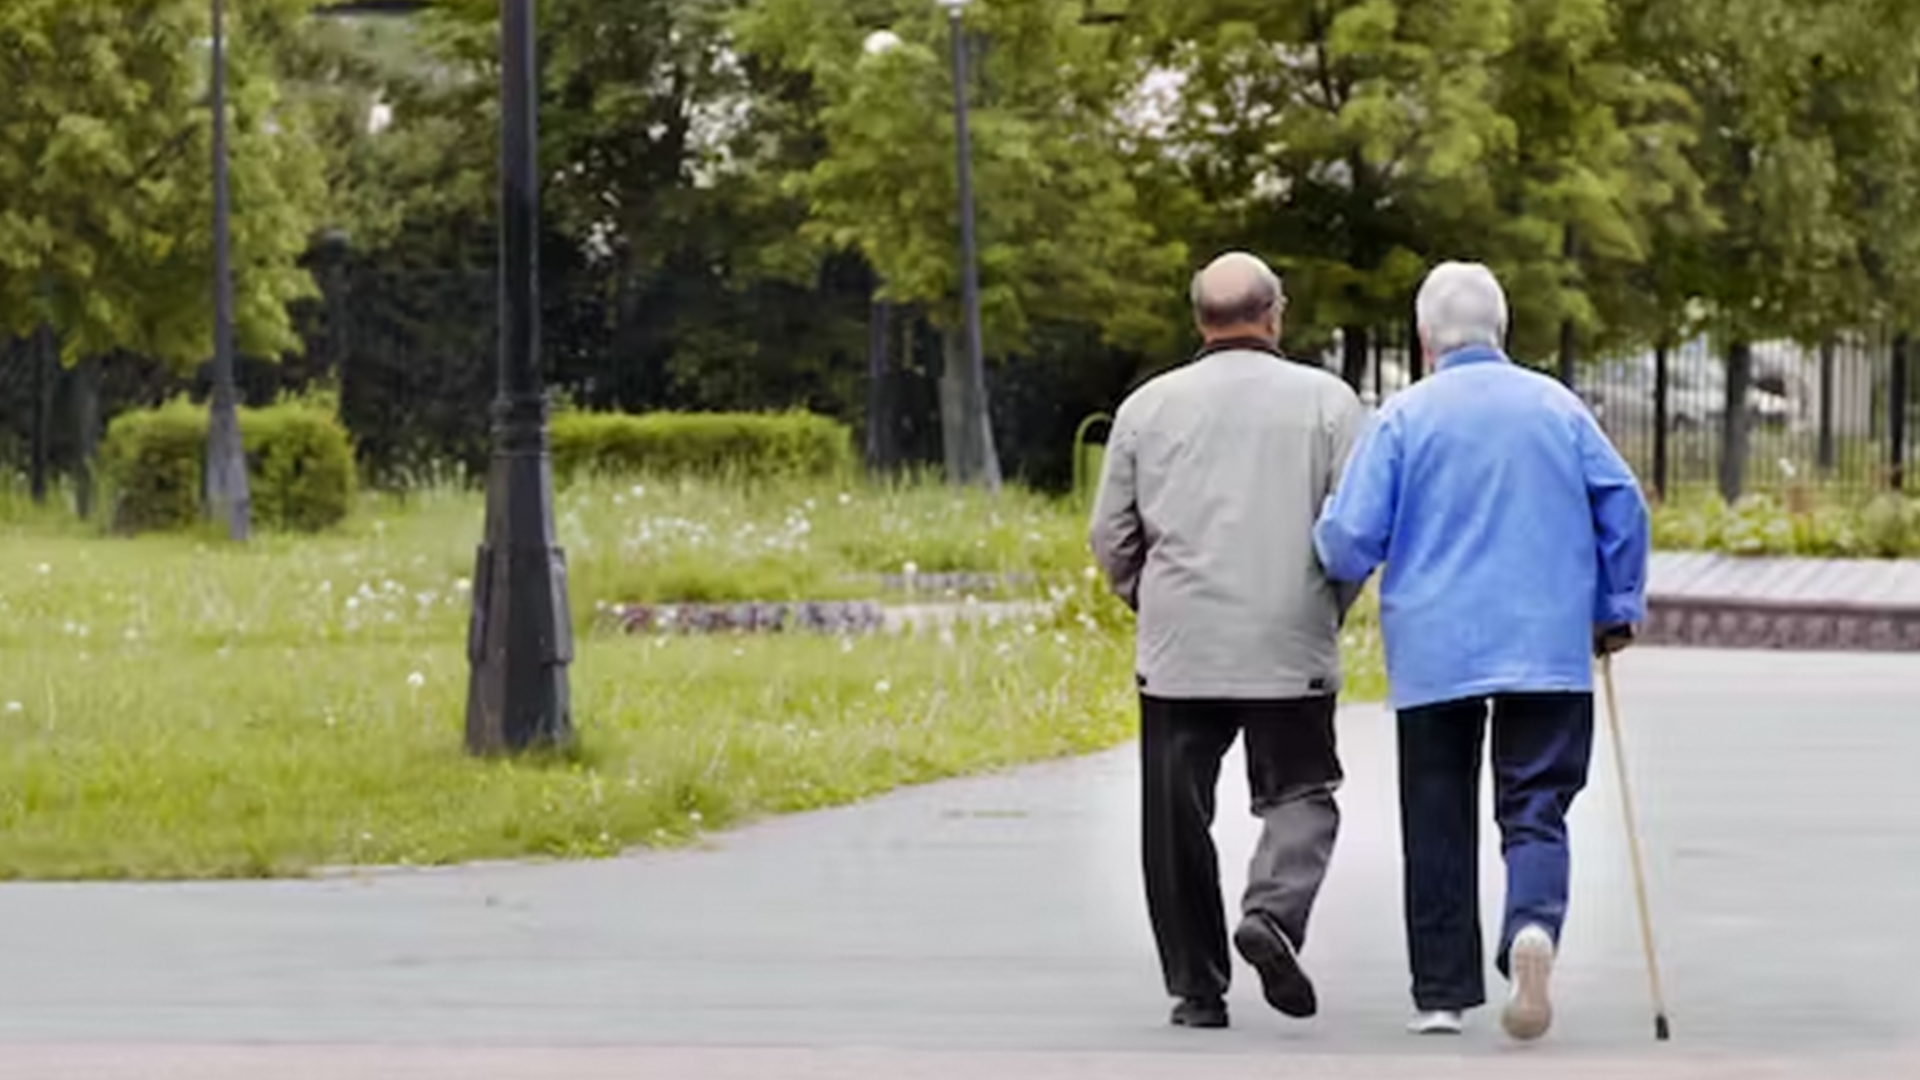 Ein älteres Paar stellte sich vor, wie es Arm in Arm durch einen Park ging, weg von der Kamera